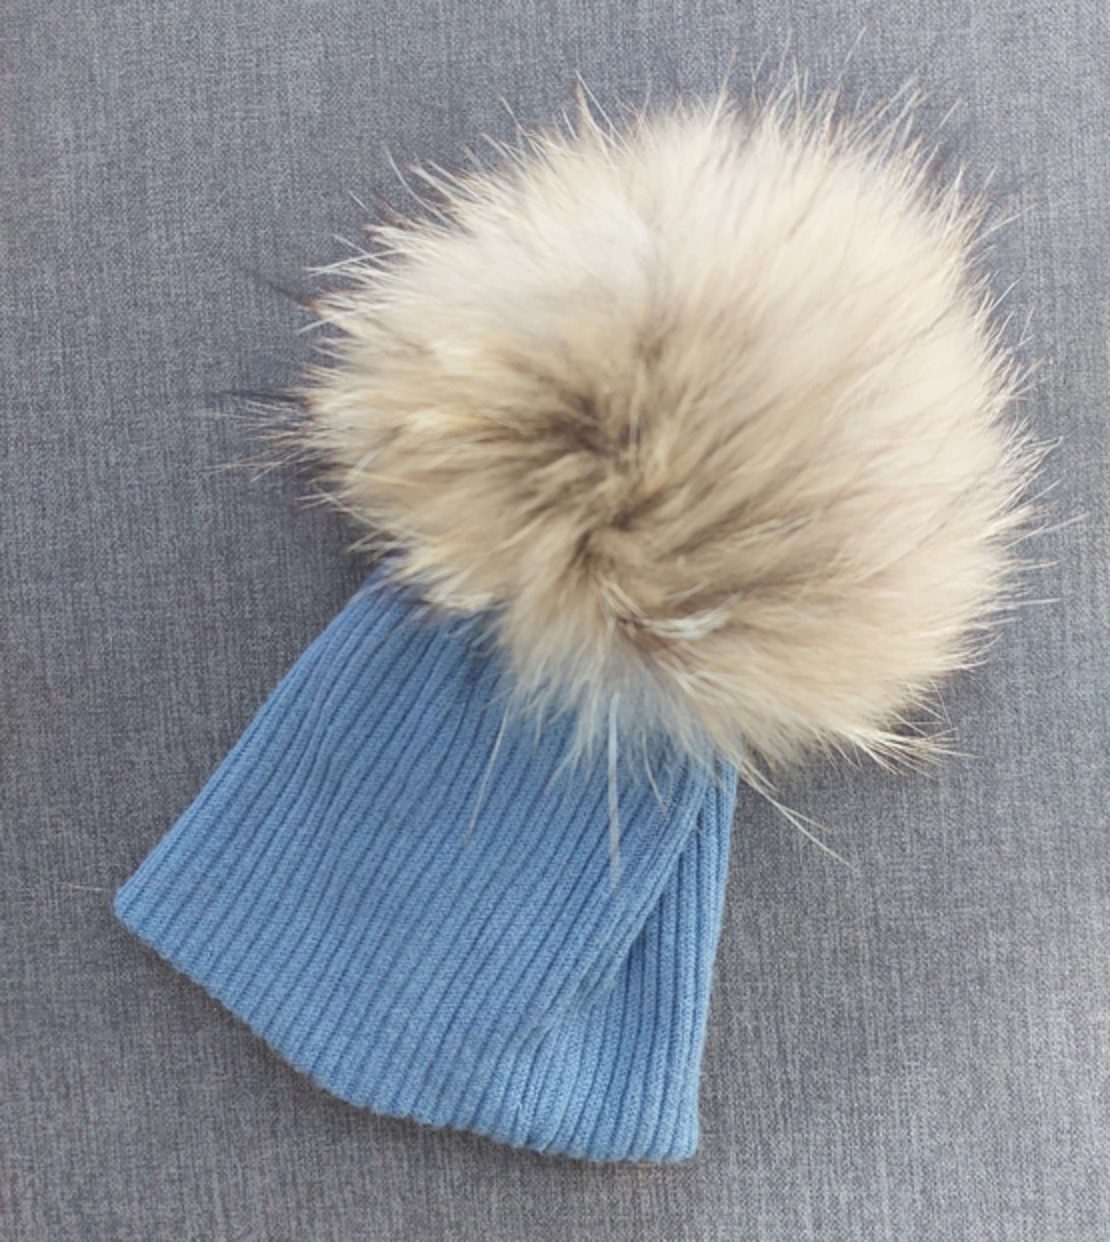 כובע כחול עם פונפון בגוון חום 0-6M